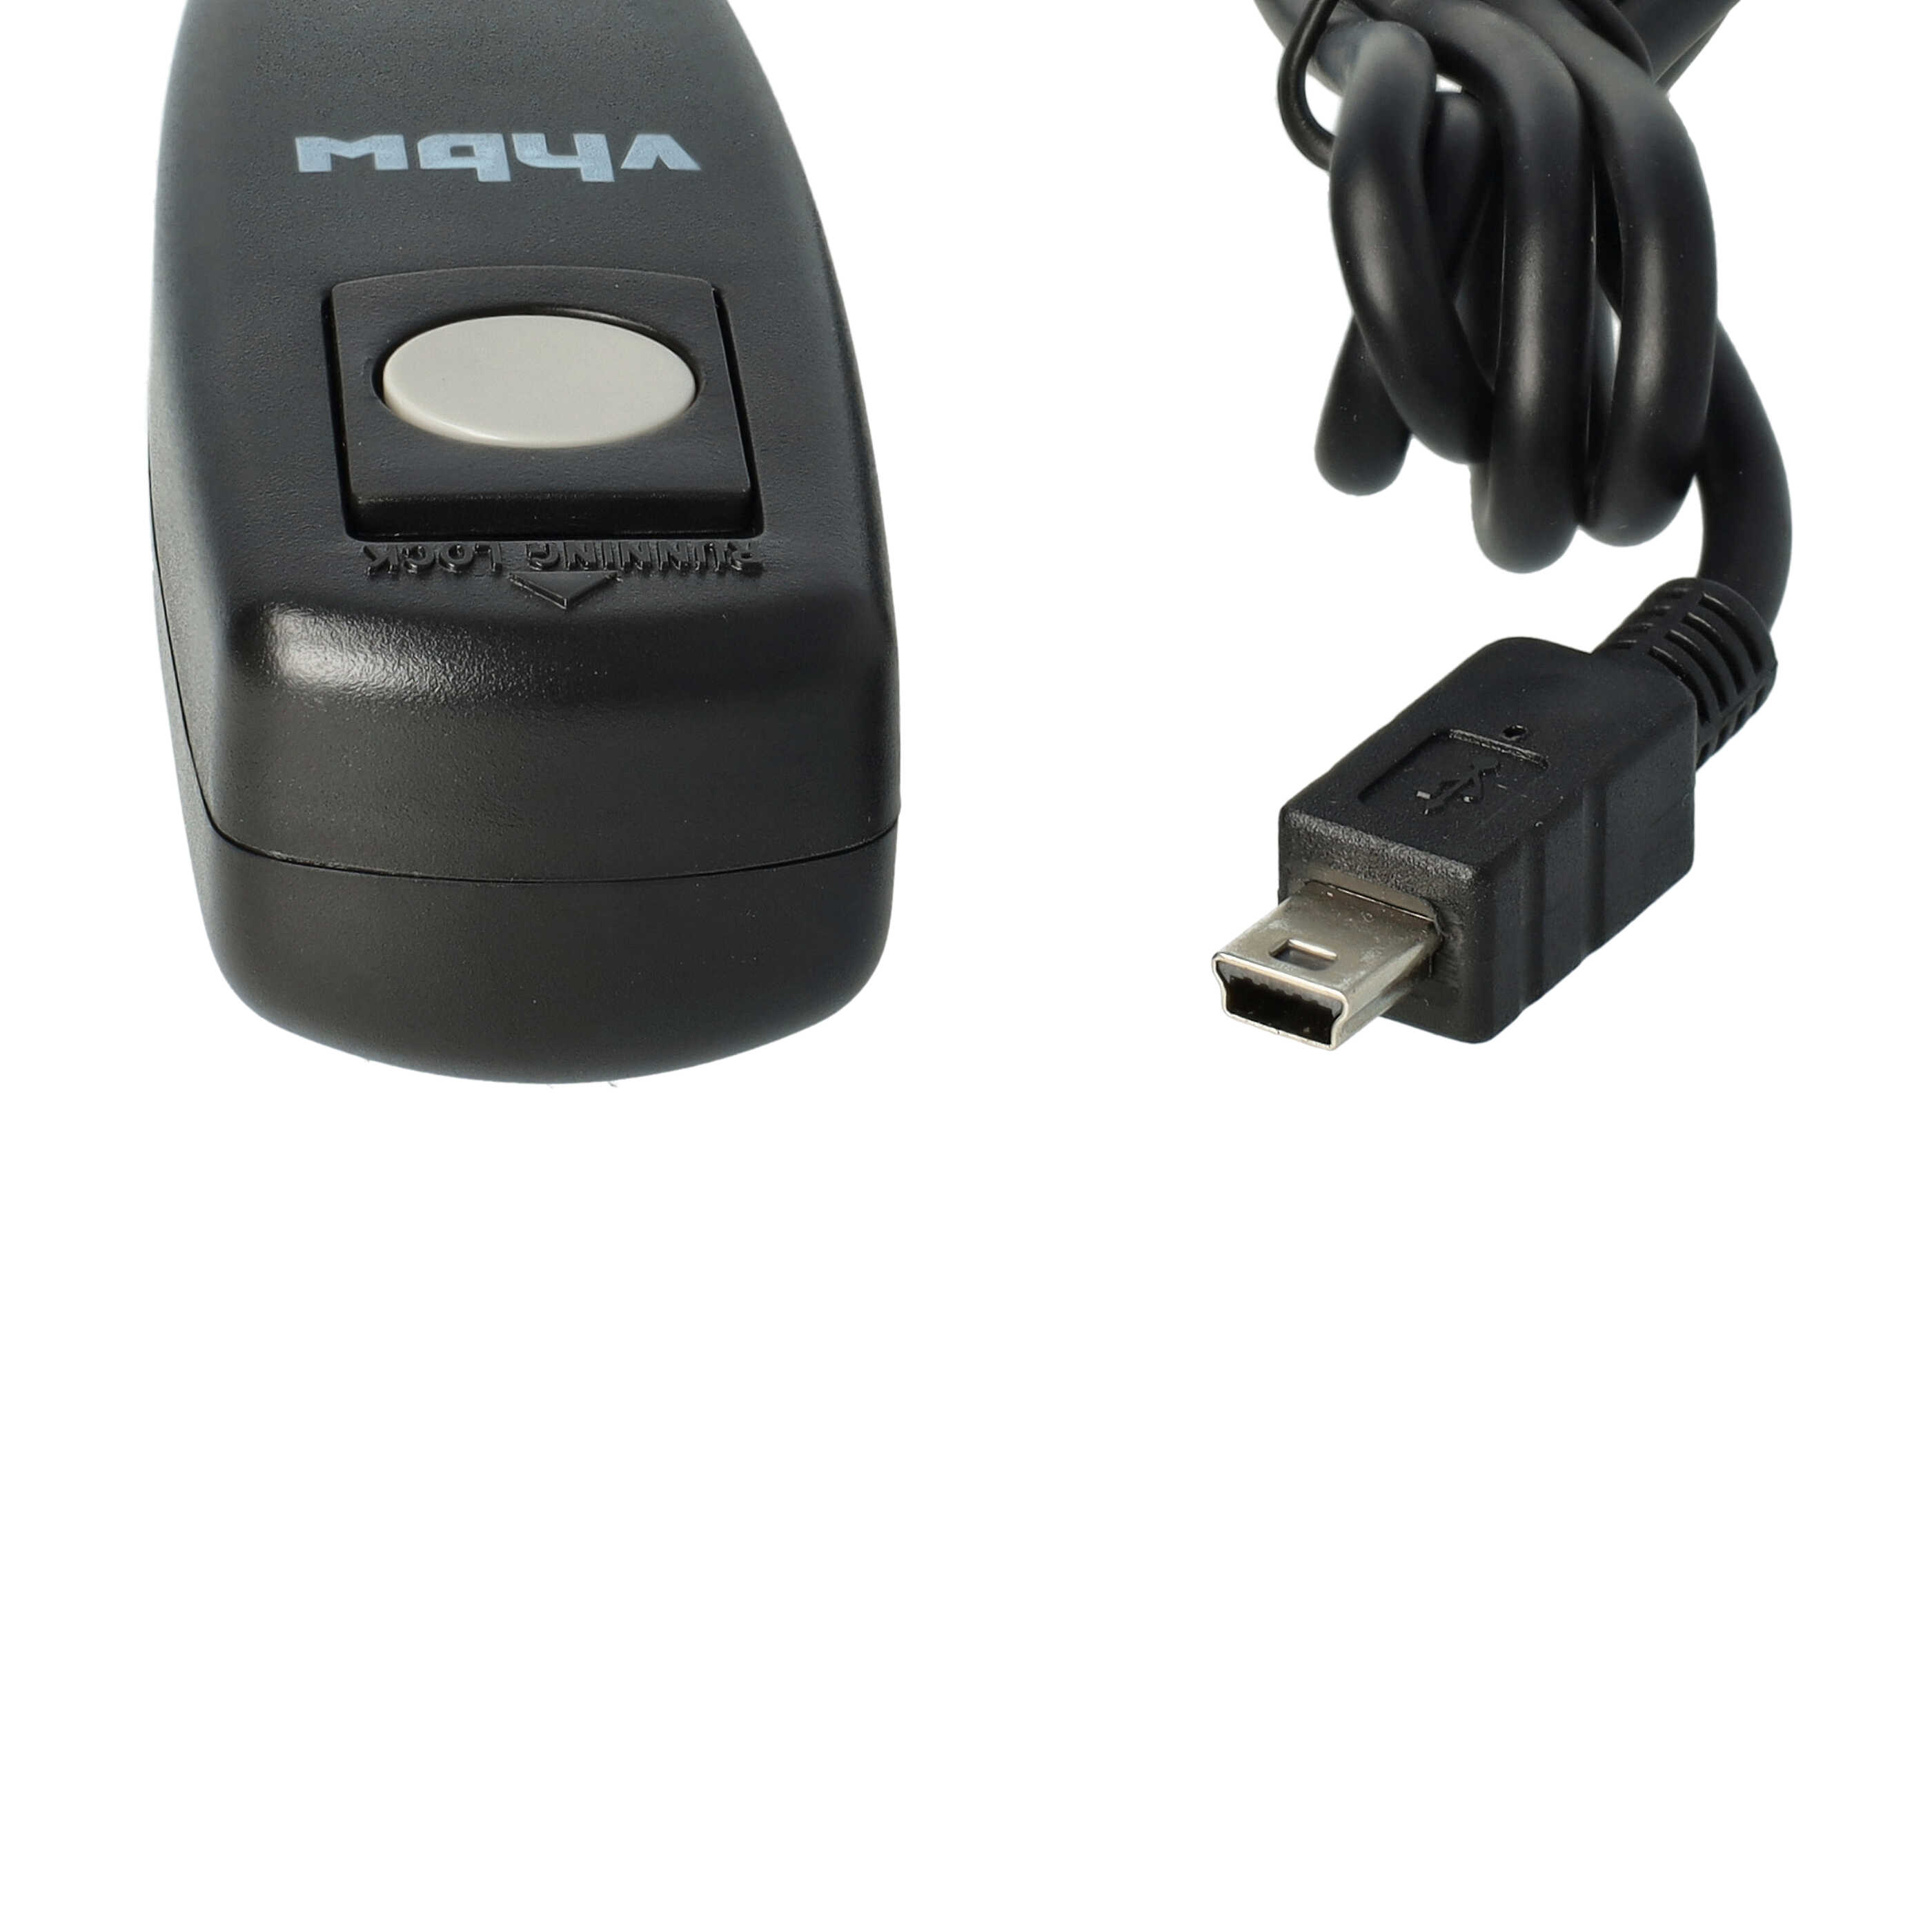 Disparador remoto reemplaza Fuji / Fujifilm RR-80RR-80-W para cámara, etc. -disparador a 2, cable 0,9 m